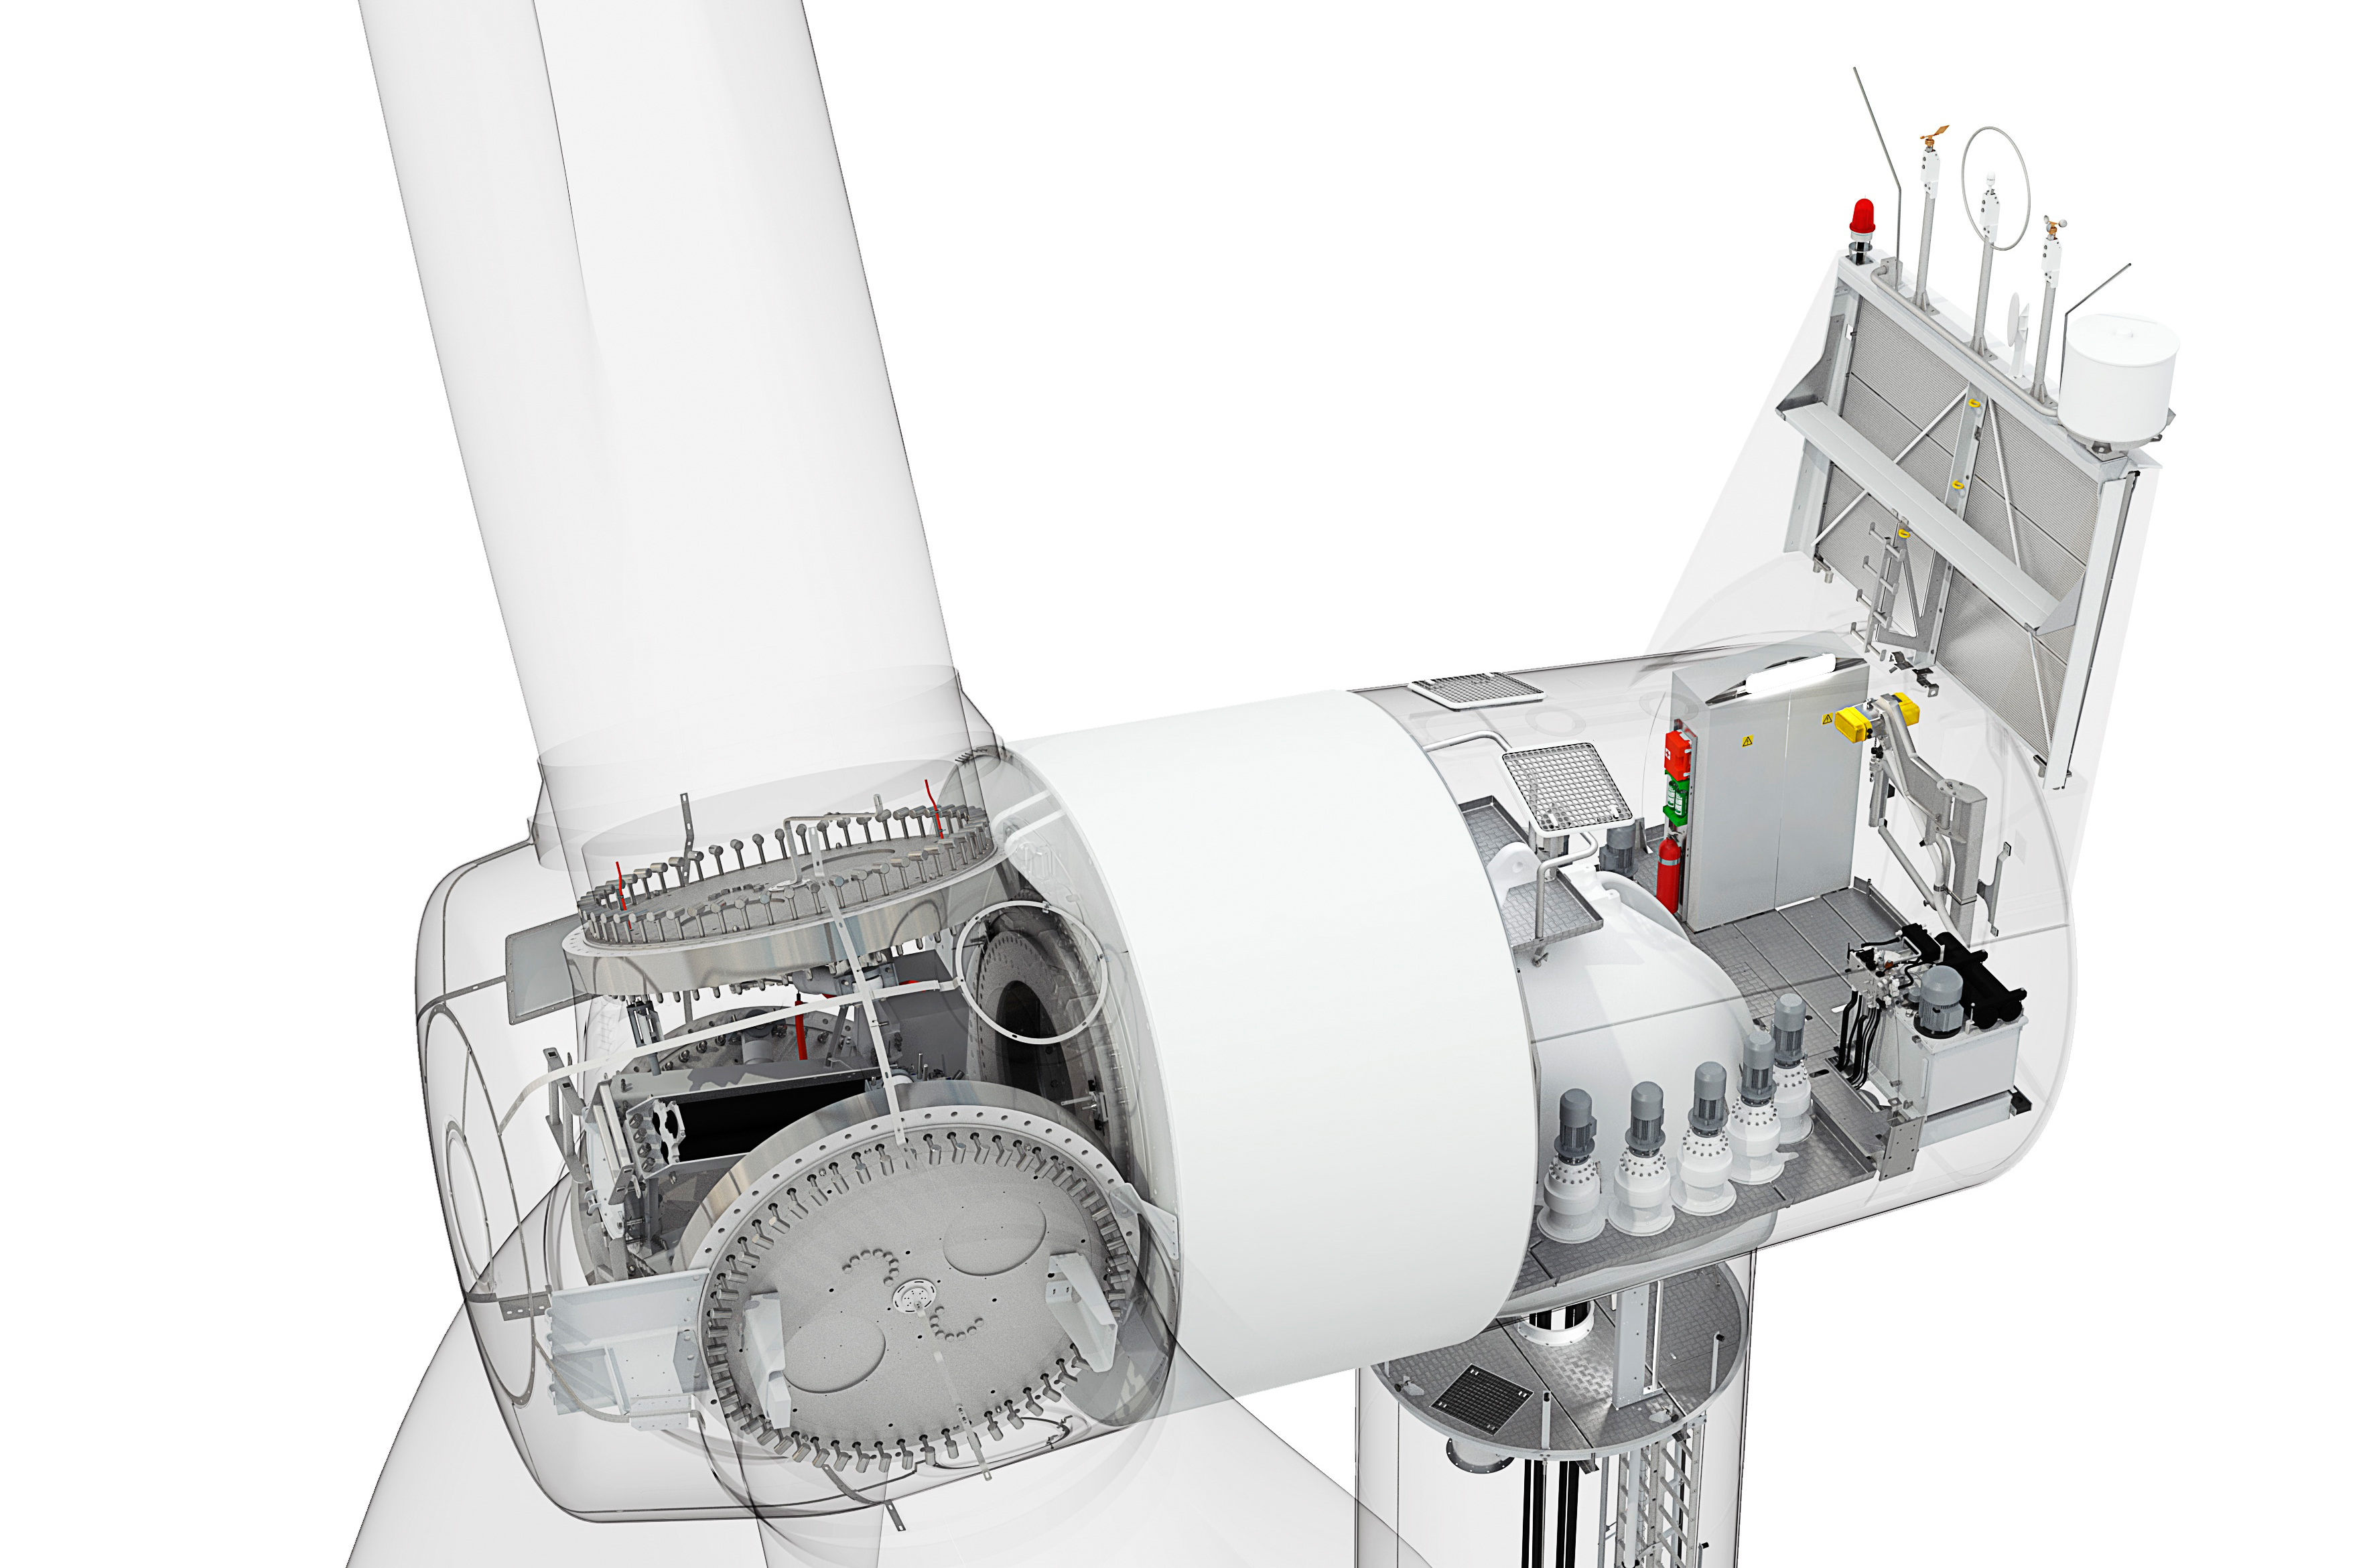 Eólica y energías renovables: Aerogeneradores de Siemens para el sector eólico marino en Reino Unido